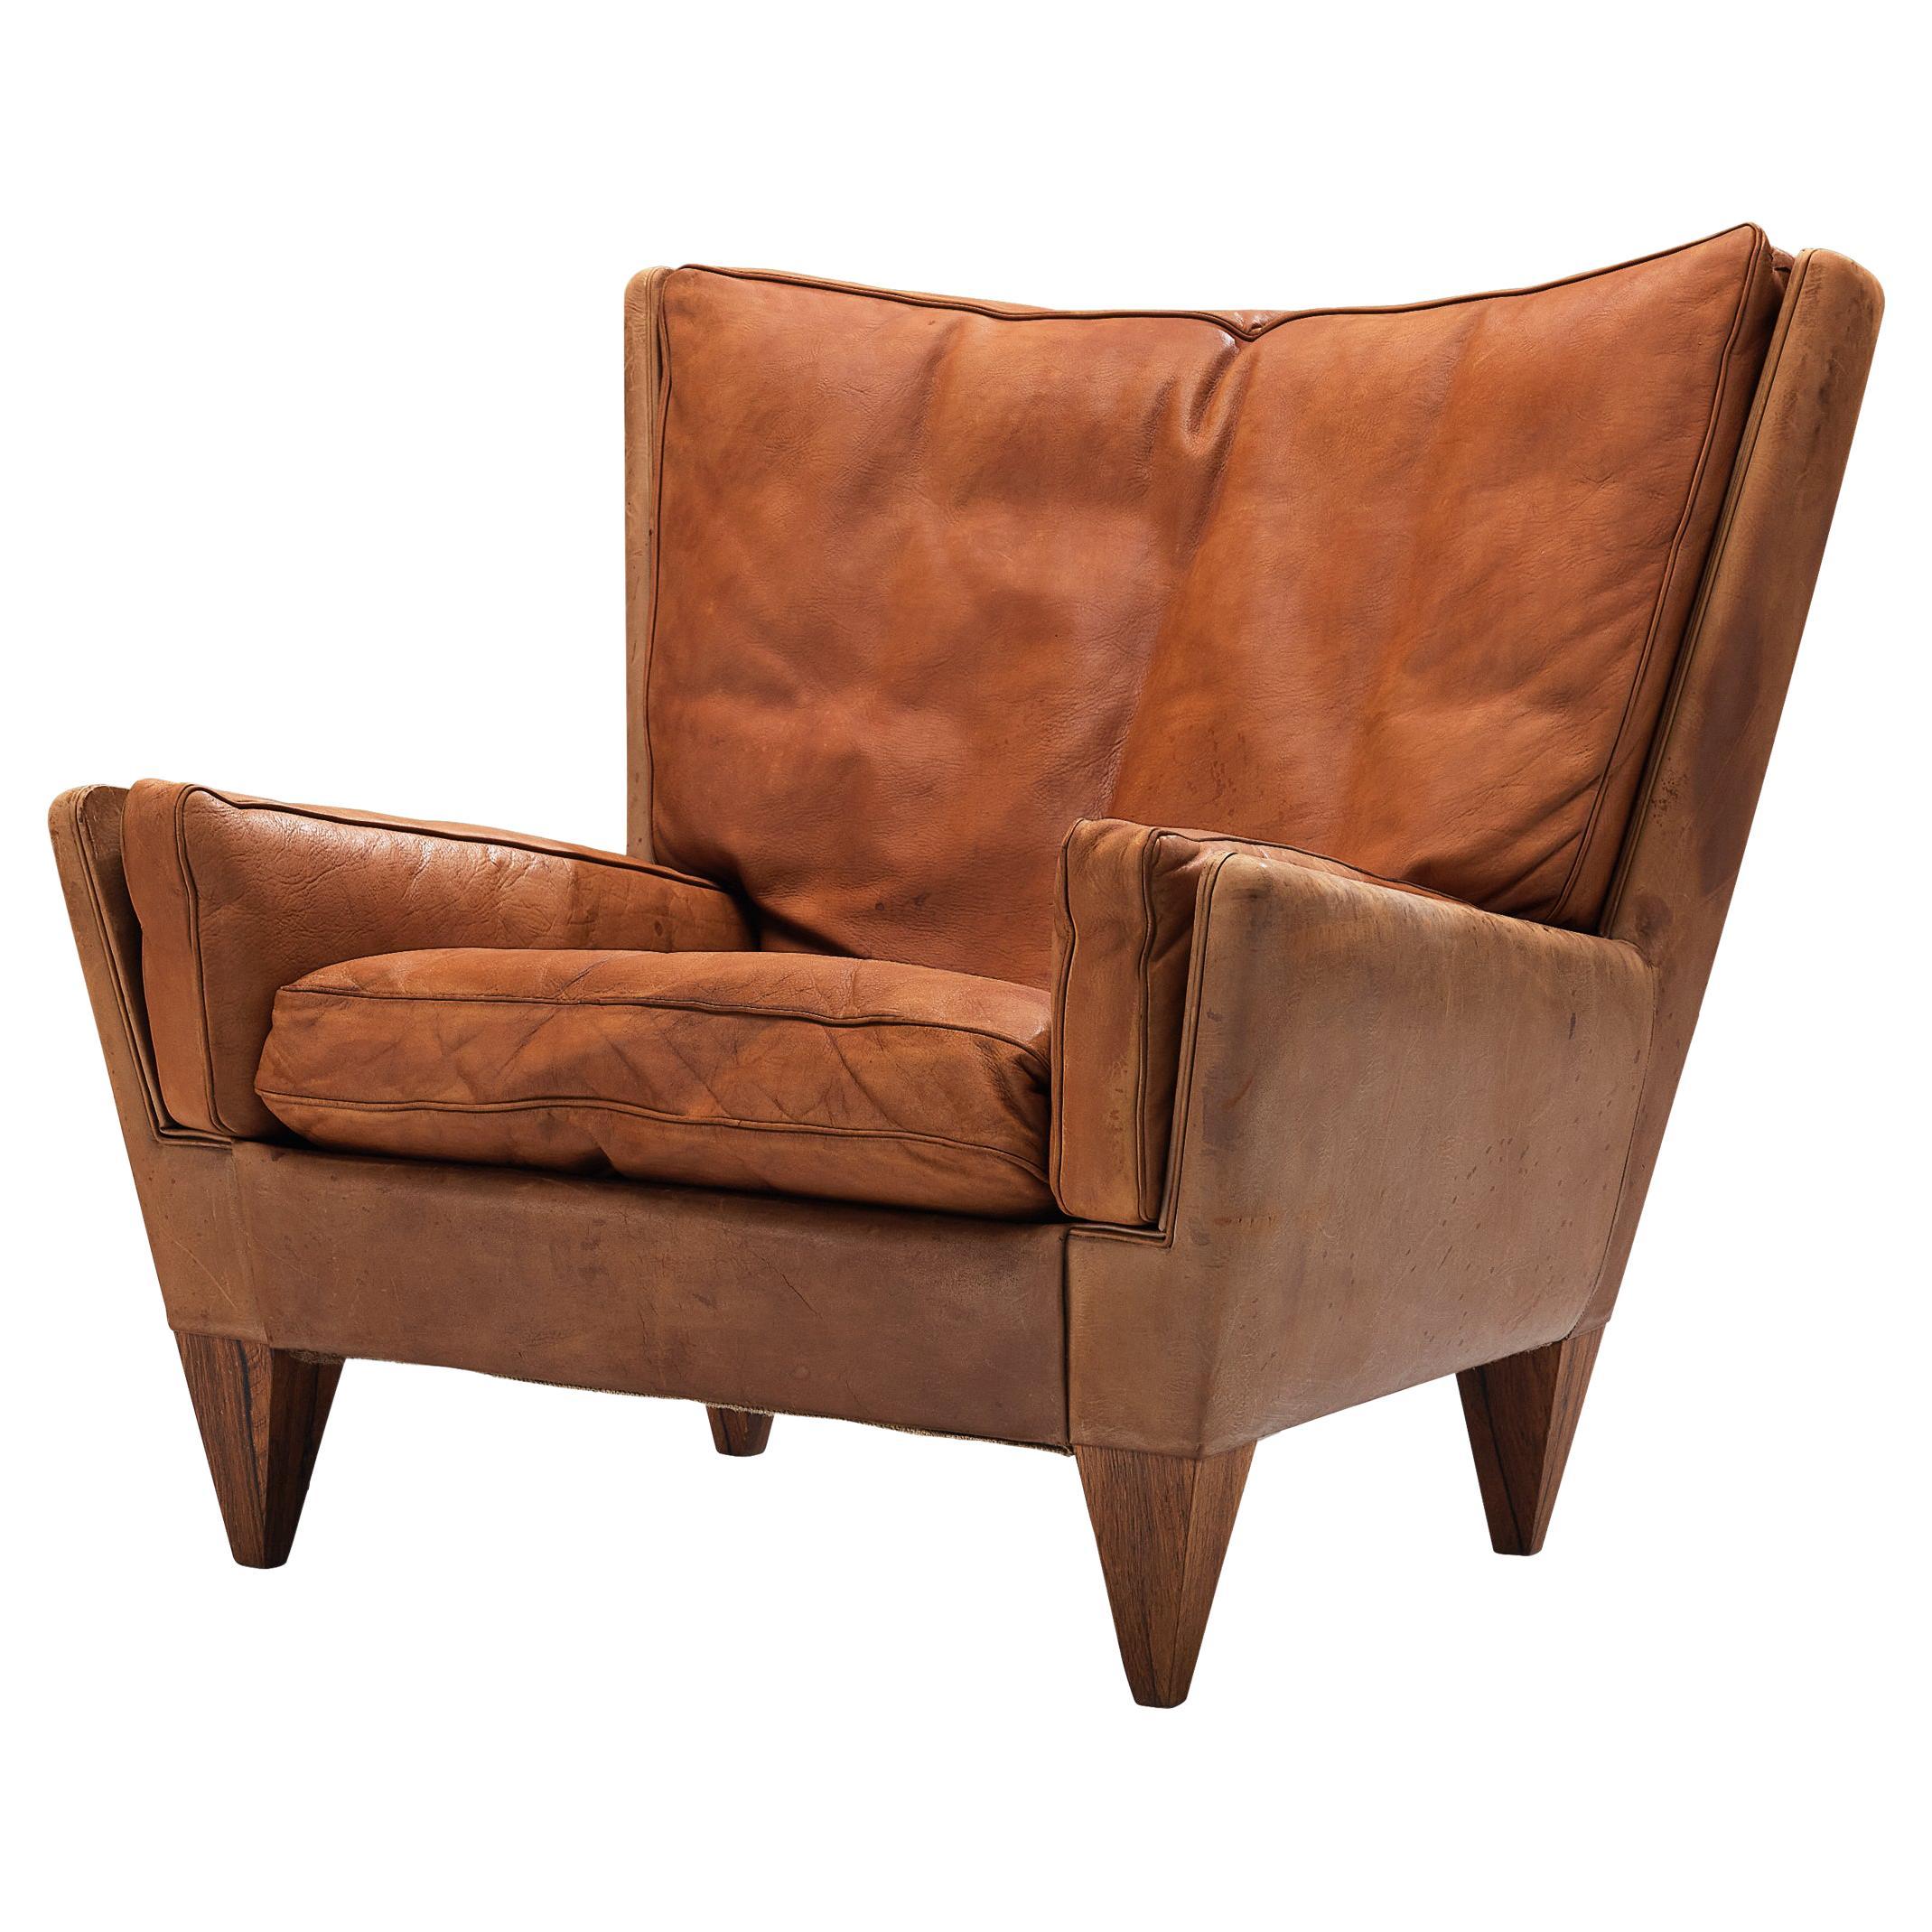 Illum Wikkelso for Holger Christiansen ‘V11’ Lounge Chair in Cognac Leather